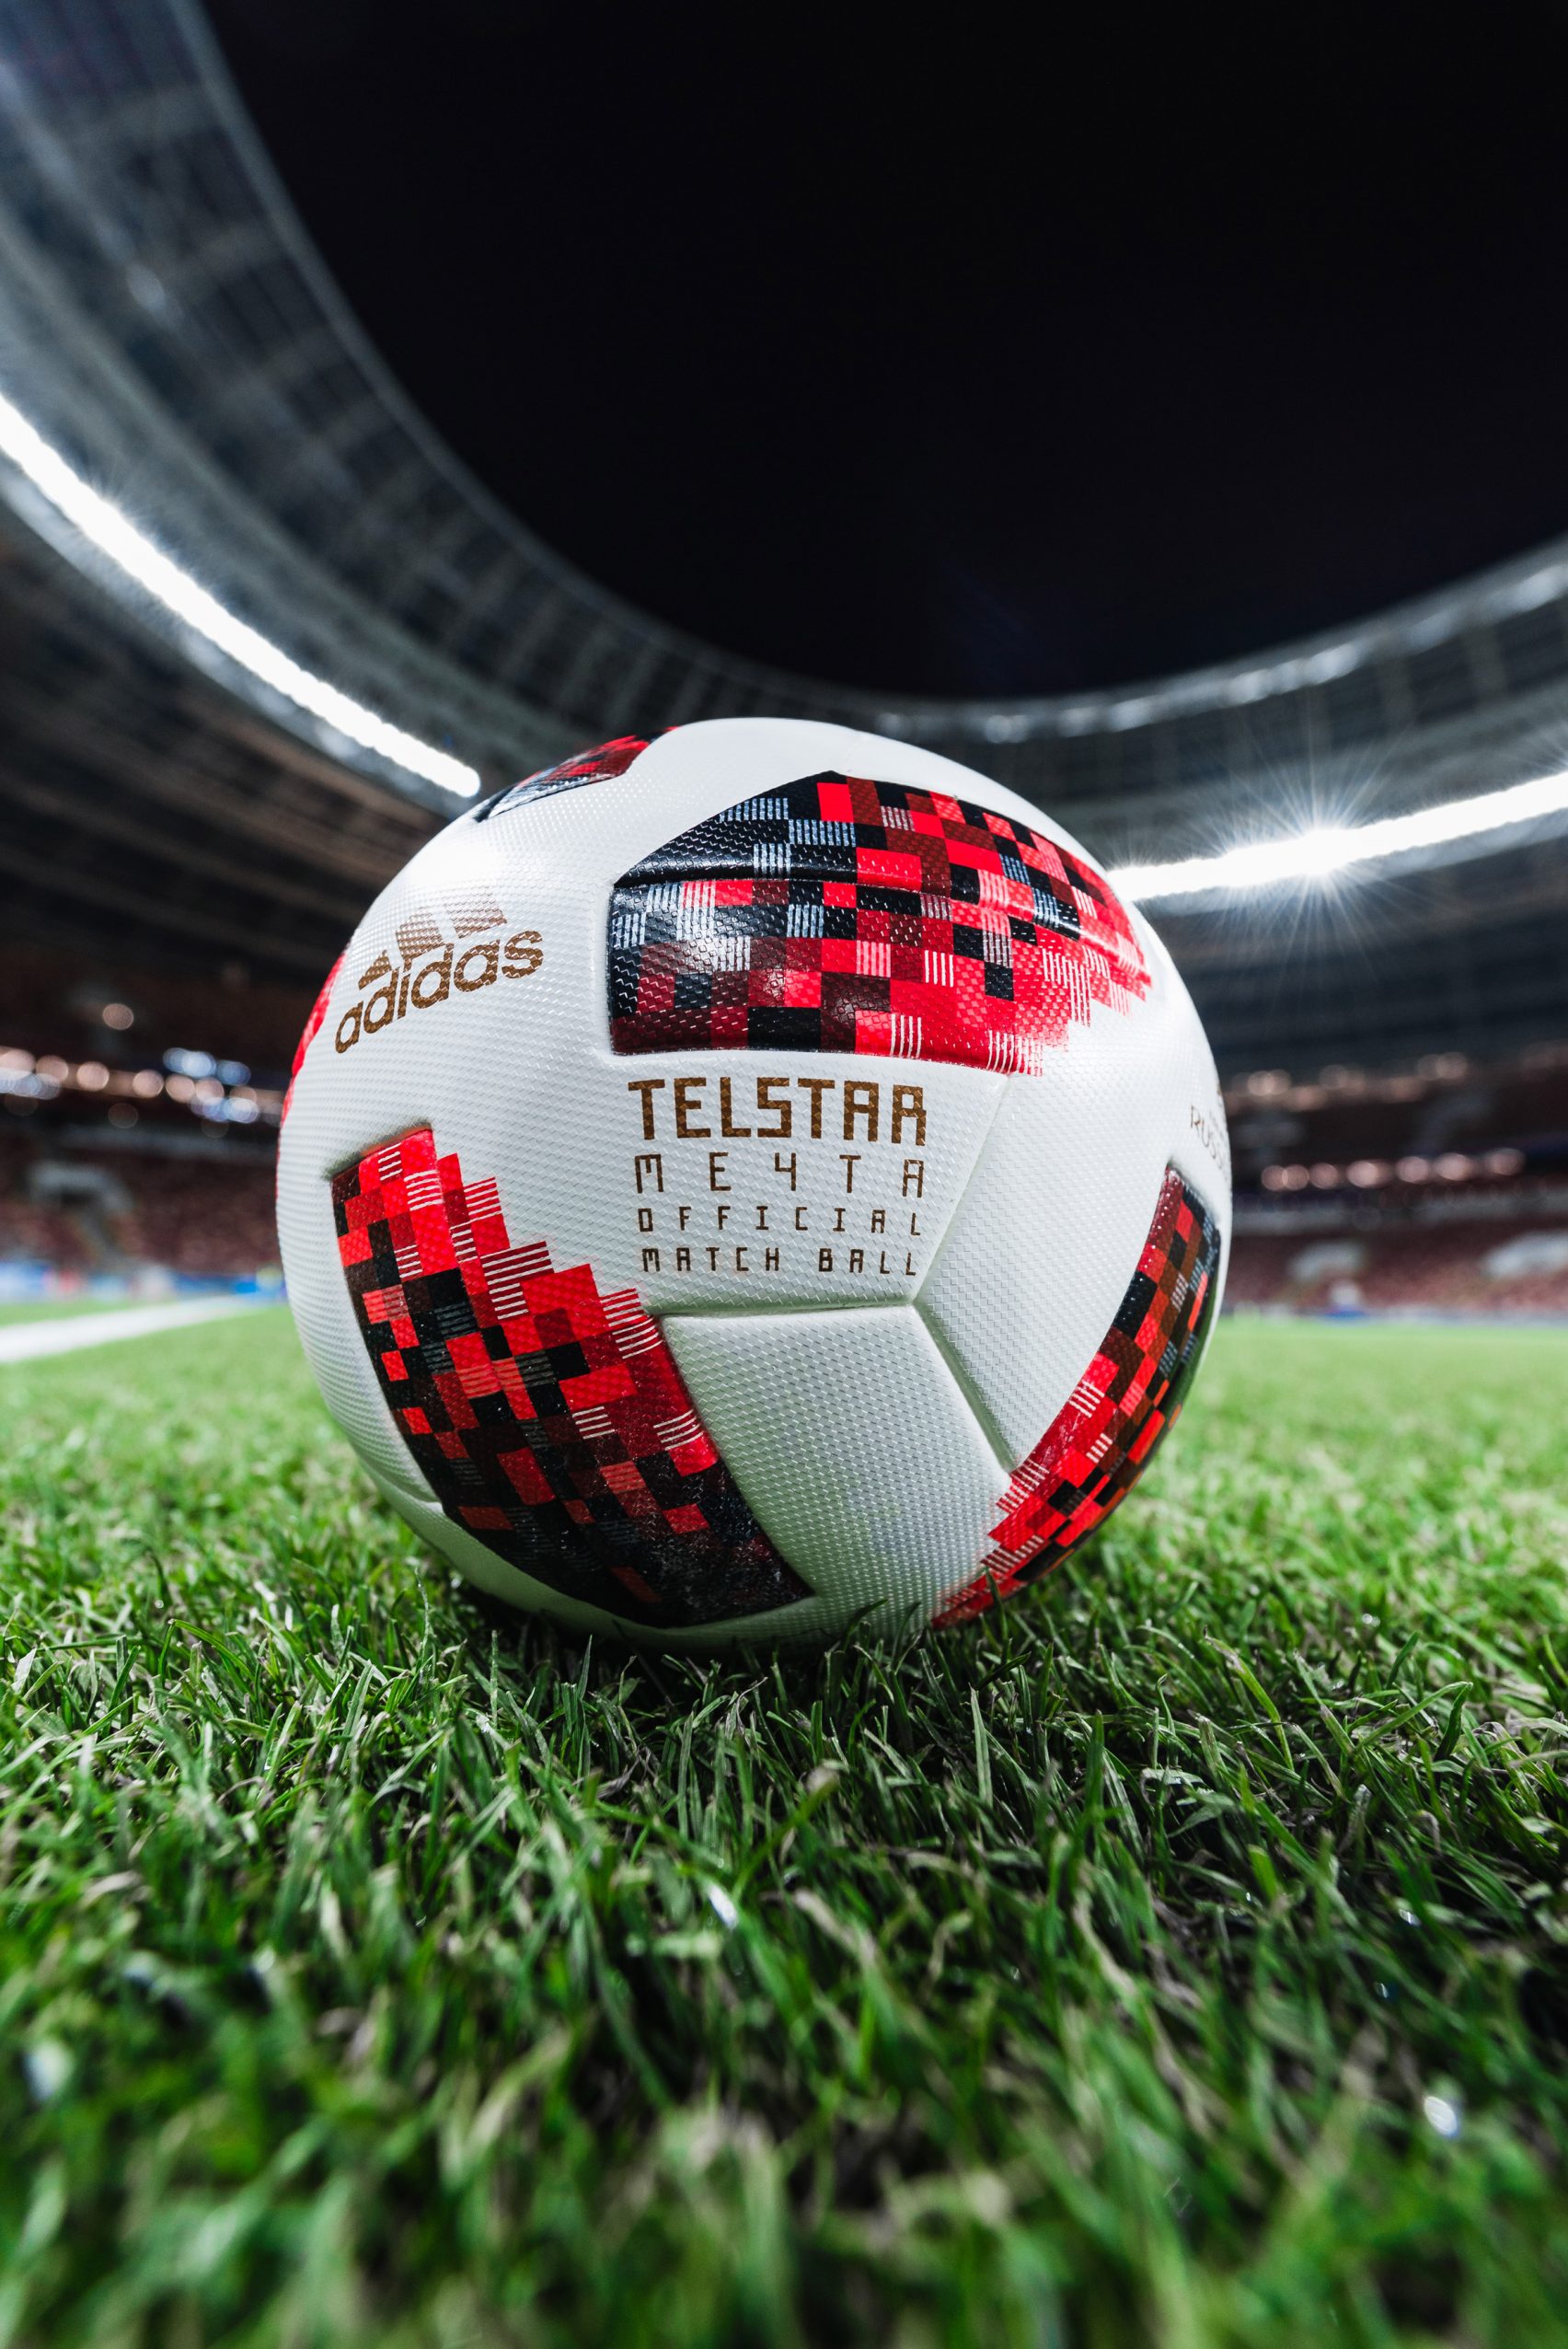 NFC칩 내장한 월드컵 공인구 텔스타 메치타